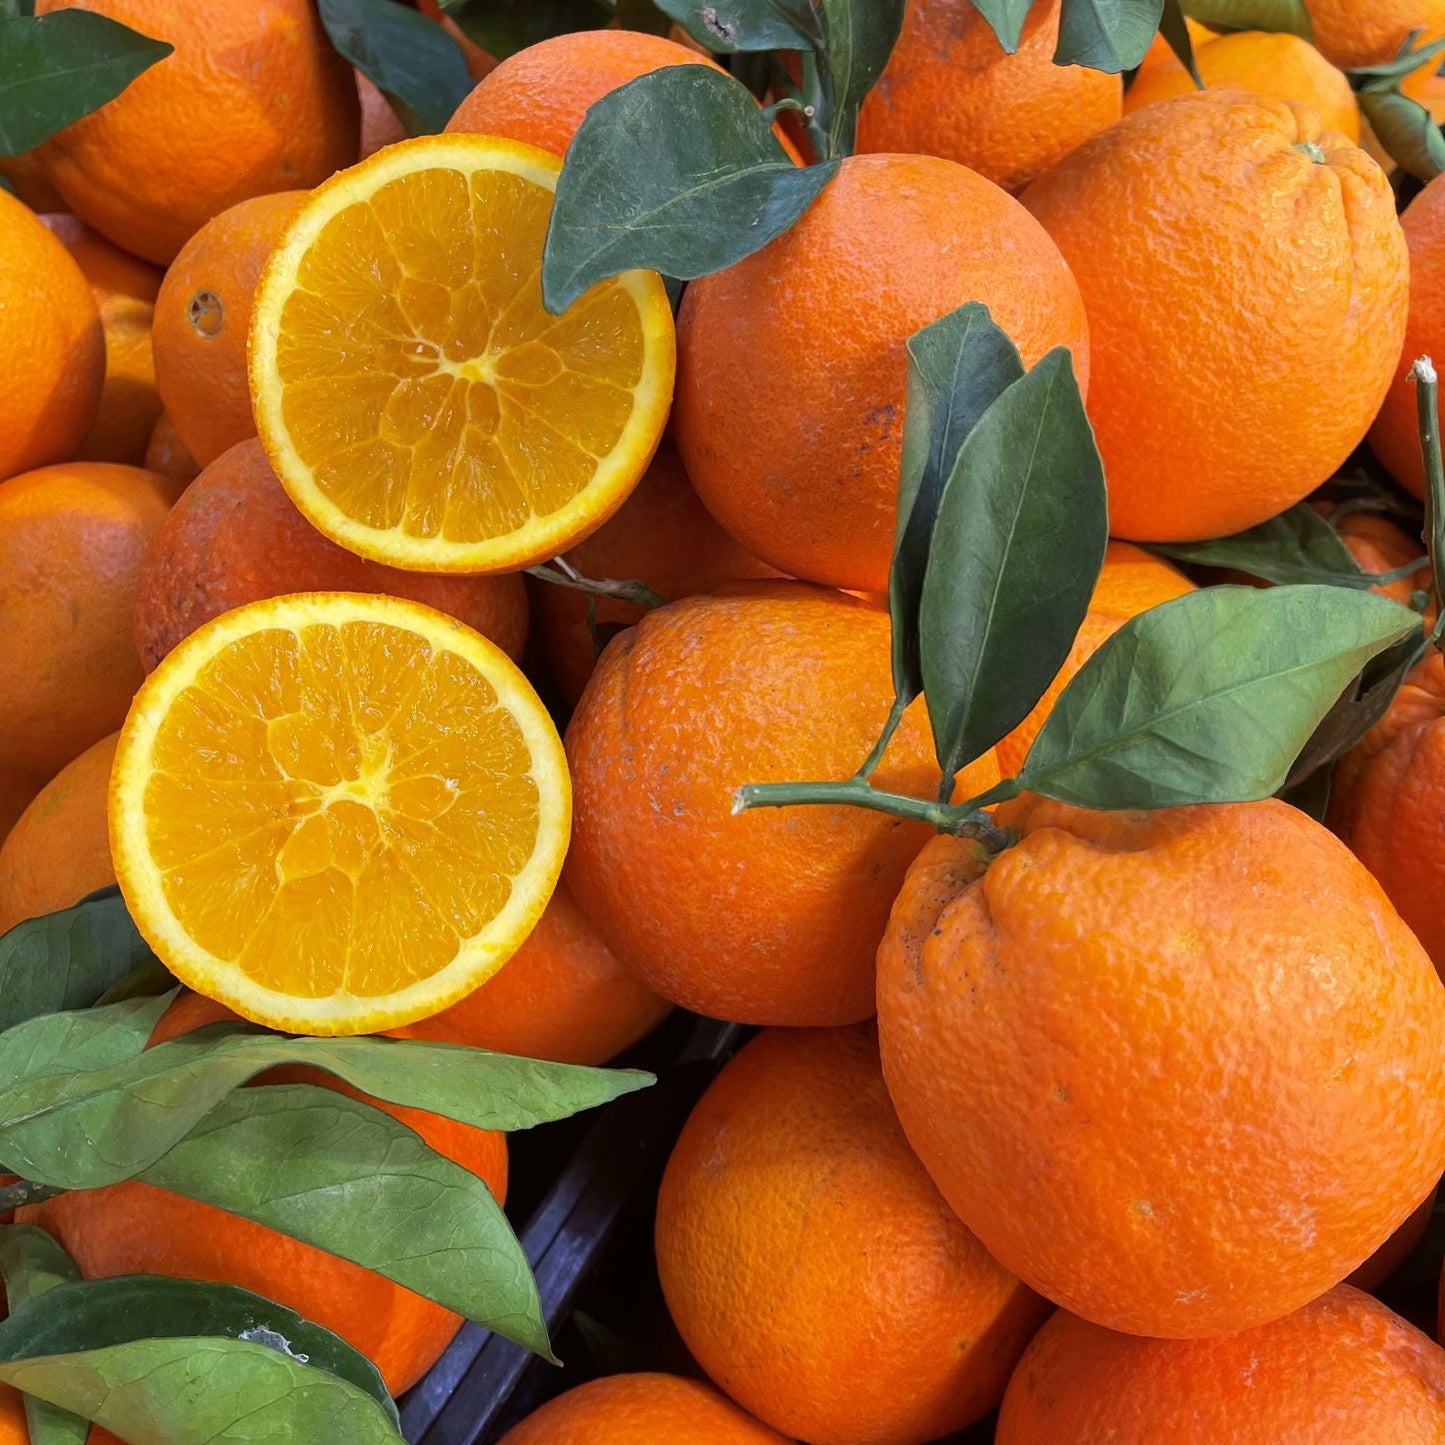 Oranges navel blondes siciliennes pour la table - Livraison gratuite - Iblagrumi